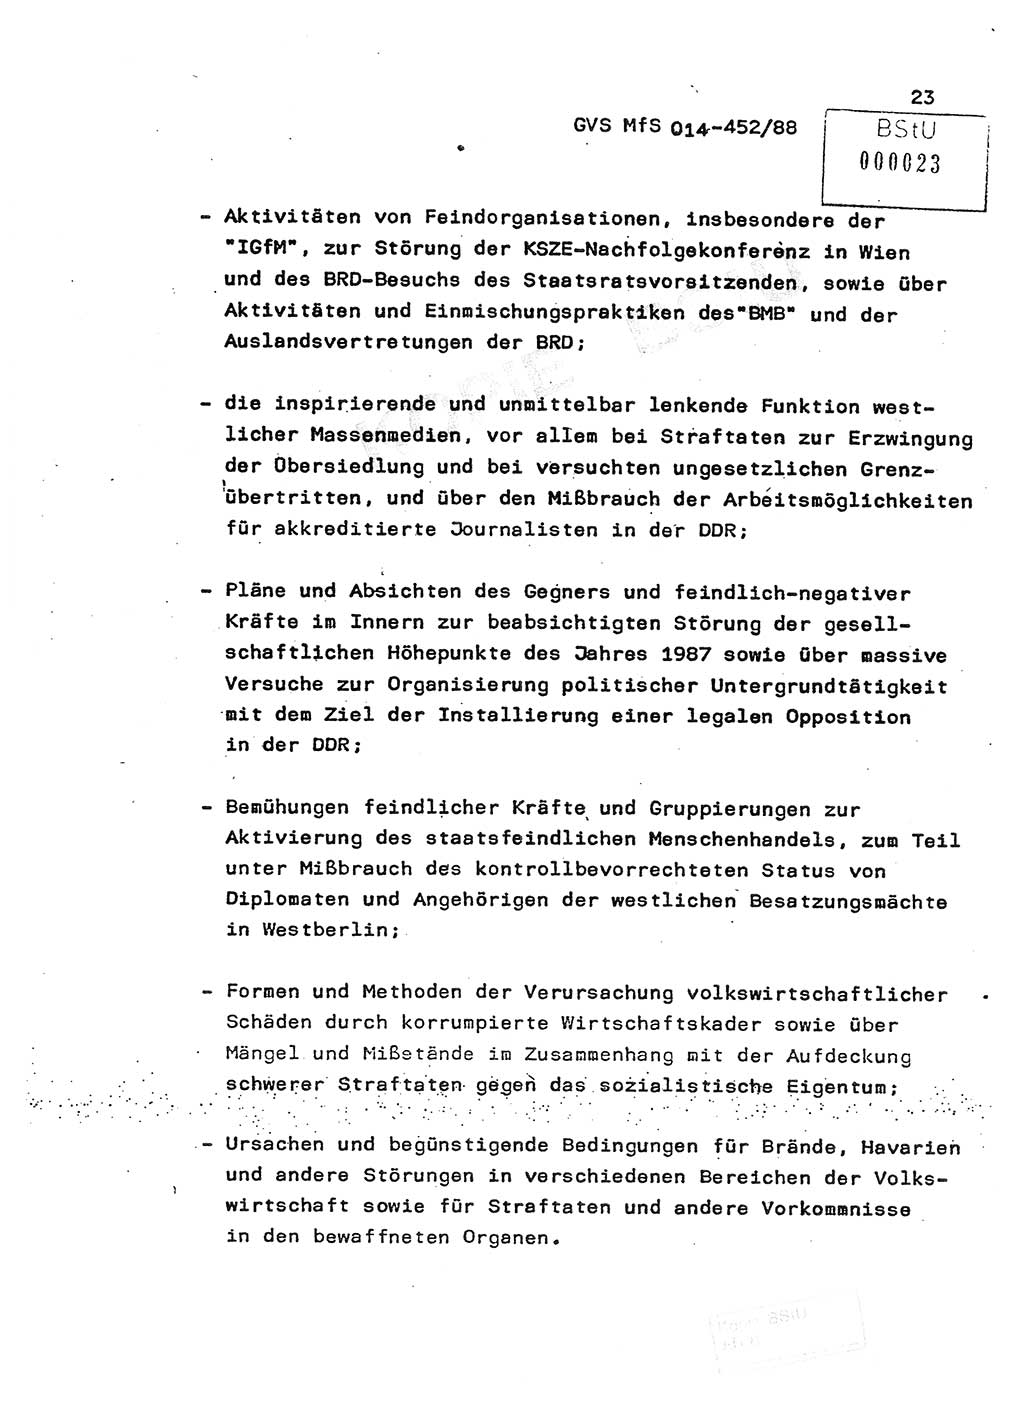 Jahresbericht der Hauptabteilung (HA) Ⅸ 1987, Einschätzung der Wirksamkeit der Untersuchungsarbeit im Jahre 1987, Ministerium für Staatssicherheit (MfS) der Deutschen Demokratischen Republik (DDR), Hauptabteilung Ⅸ, Geheime Verschlußsache (GVS) o014-452/88, Berlin 1988, Seite 23 (Einsch. MfS DDR HA Ⅸ GVS o014-452/88 1987, S. 23)